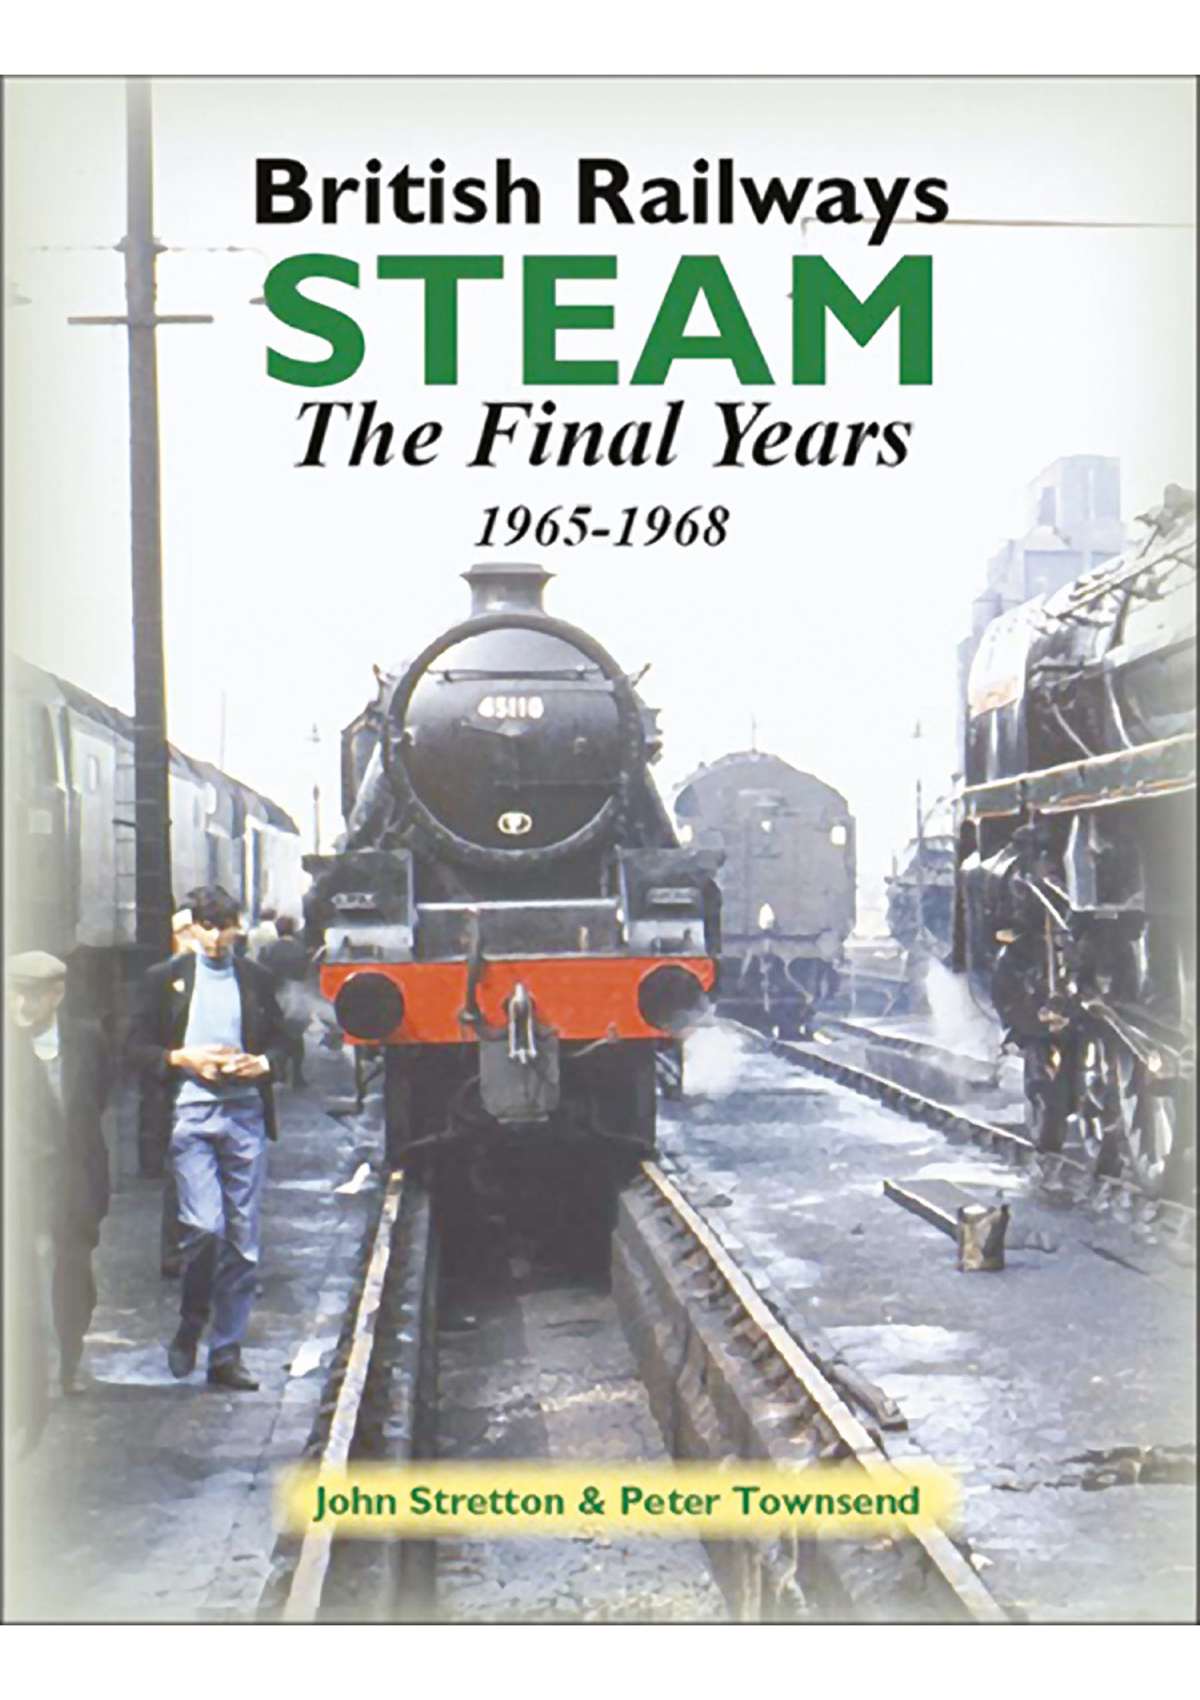 3207 - British Railways Steam: The Final Years, 1965-1968